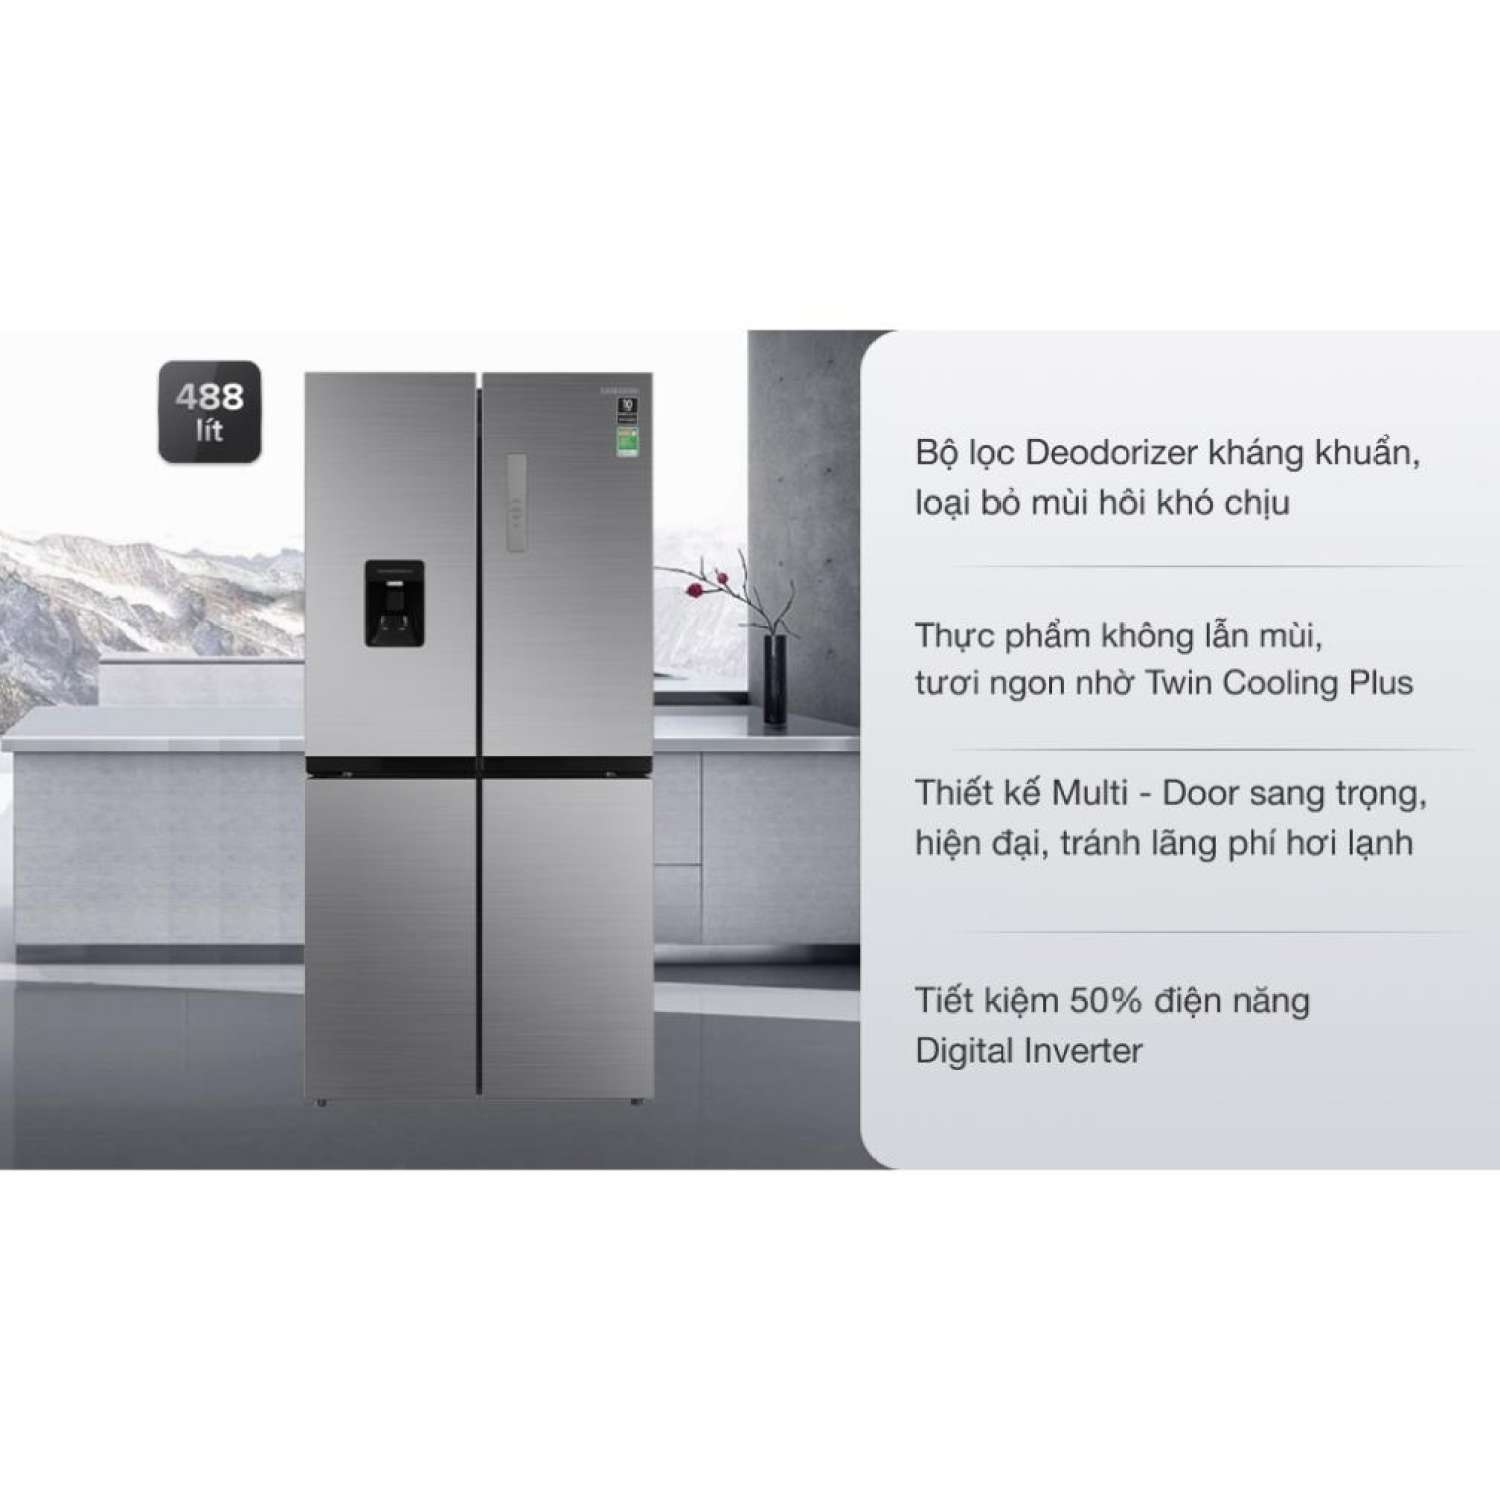 Tủ lạnh Samsung Inverter 488 lít RF48A4010M9/SV Chính hãng BH: 24 tháng trên toàn quốc